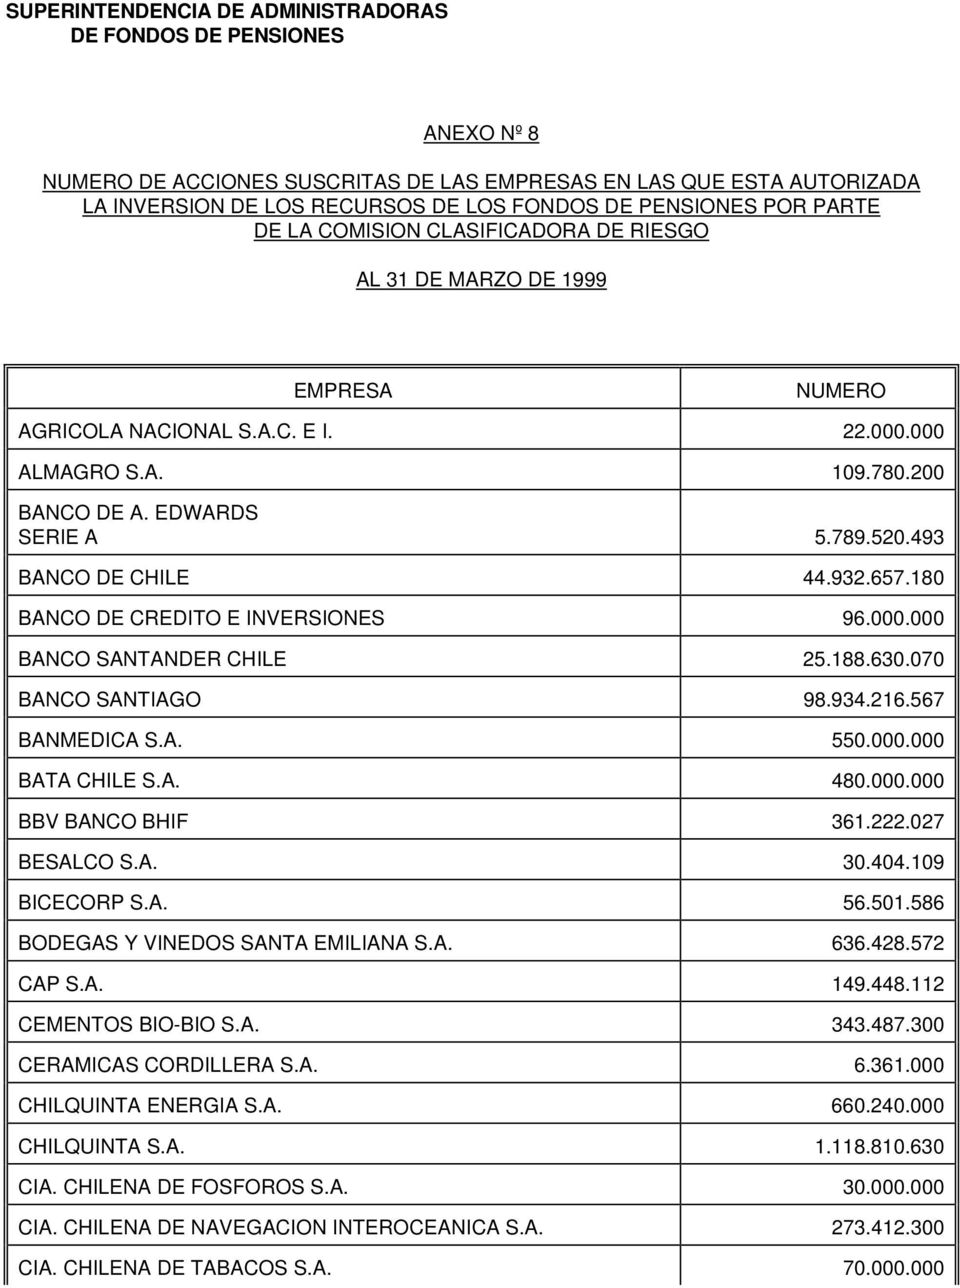 180 BANCO DE CREDITO E INVERSIONES 96.000.000 BANCO SANTANDER CHILE 25.188.630.070 BANCO SANTIAGO 98.934.216.567 BANMEDICA S.A. 550.000.000 BATA CHILE S.A. 480.000.000 BBV BANCO BHIF 361.222.